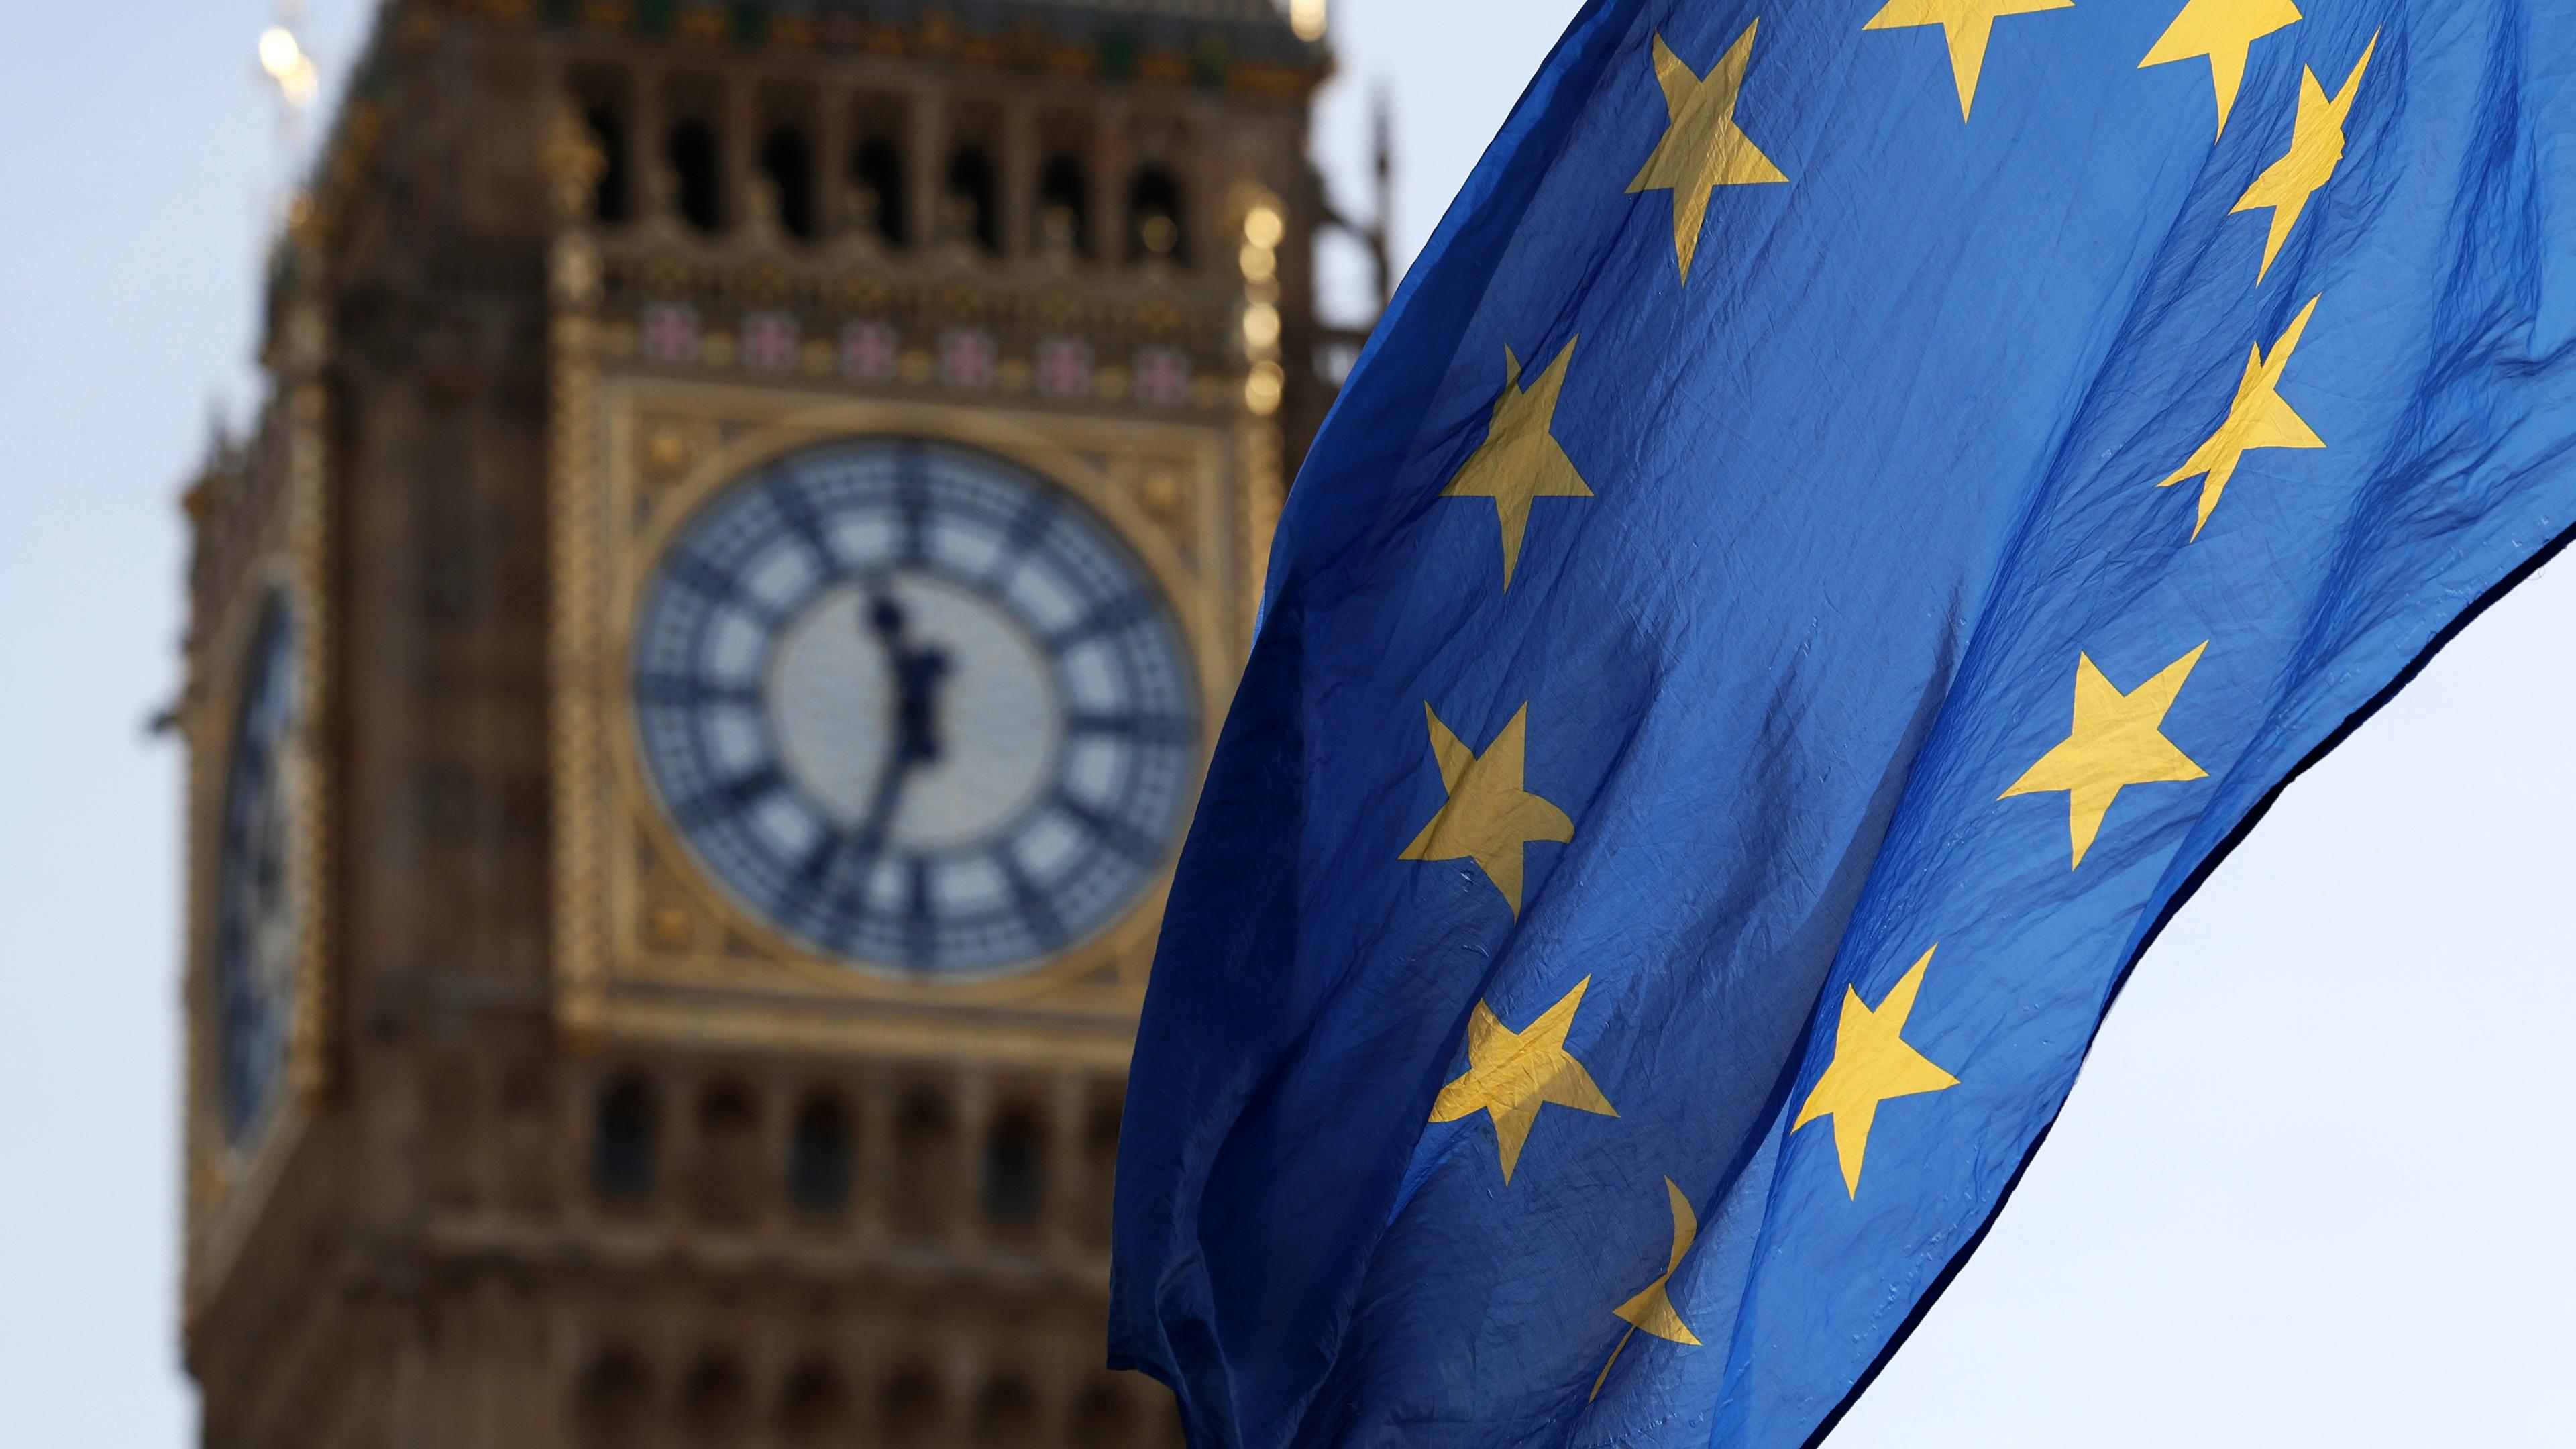 Es ist der Big Ben Glockenturm in London zu sehen und davor weht die Flagge der EU